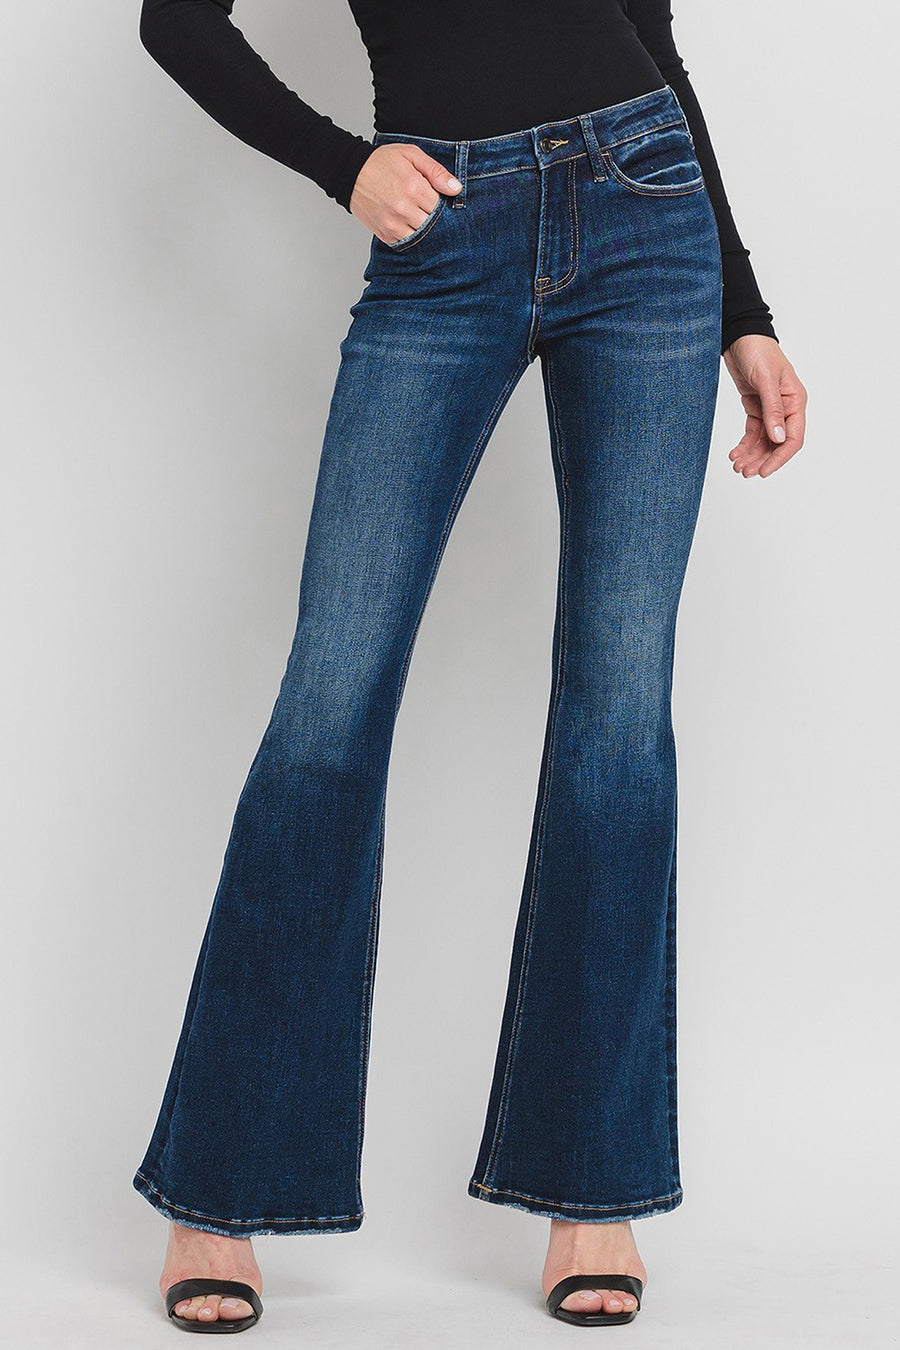 Lovervet Mid-Rise Flare Jeans- LV1040